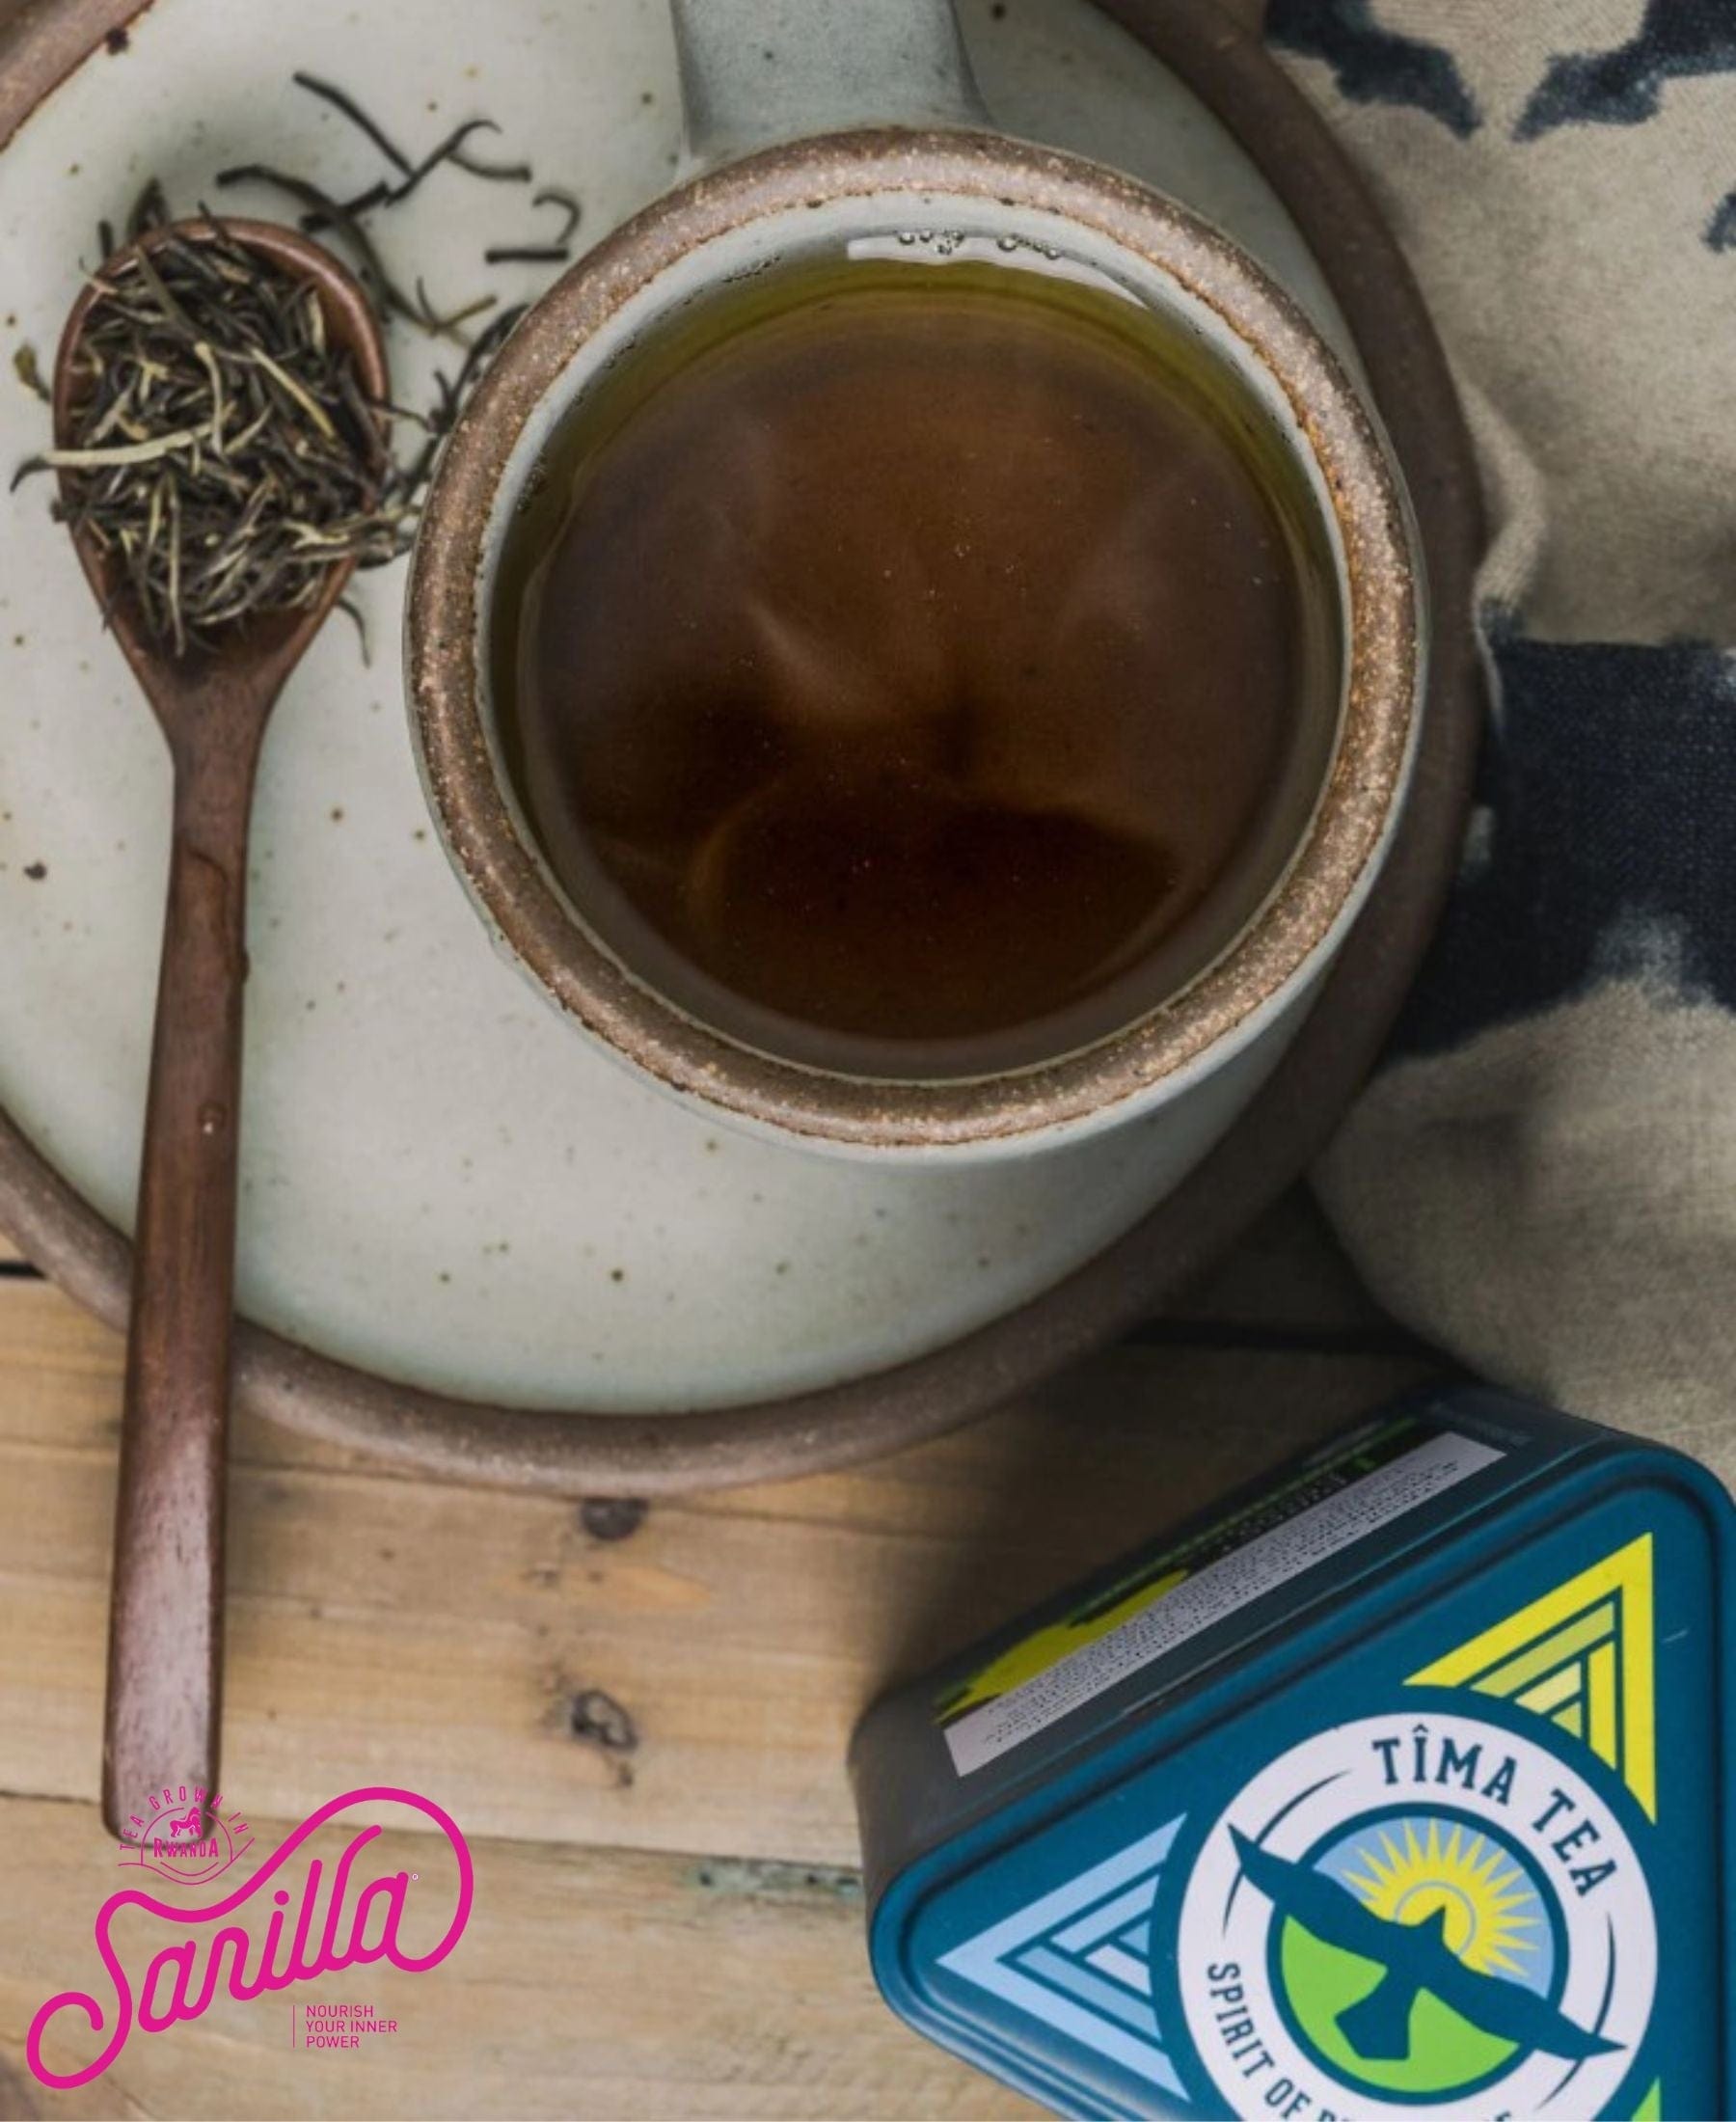 Sarilla White Tea: Tins and Bulk